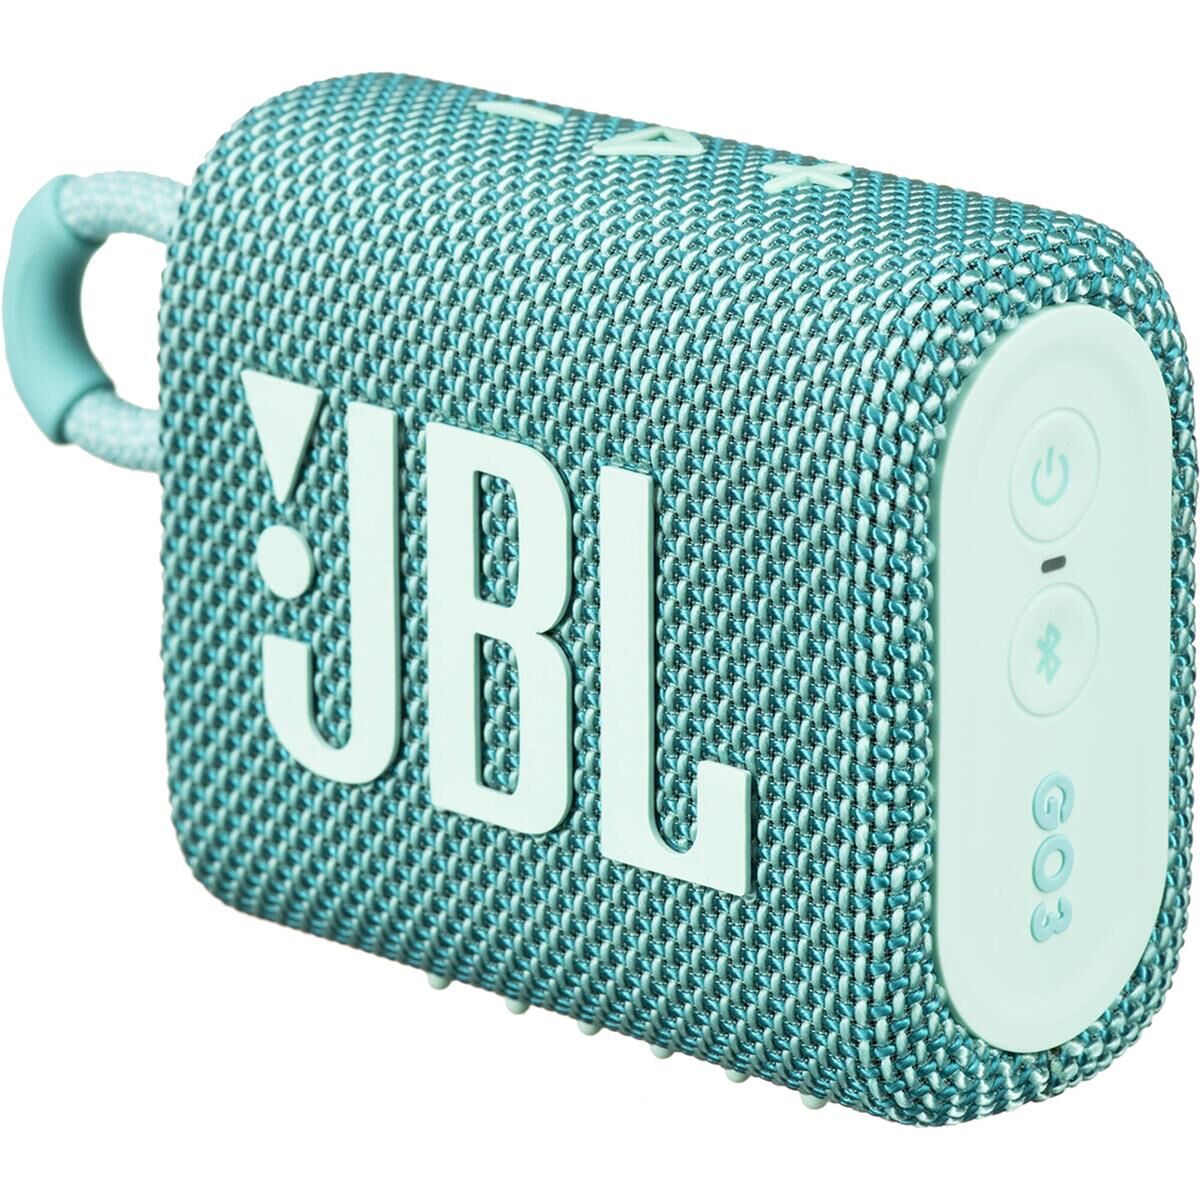 JBL Go 3 Waterproof Portable Bluetooth Speaker Teal